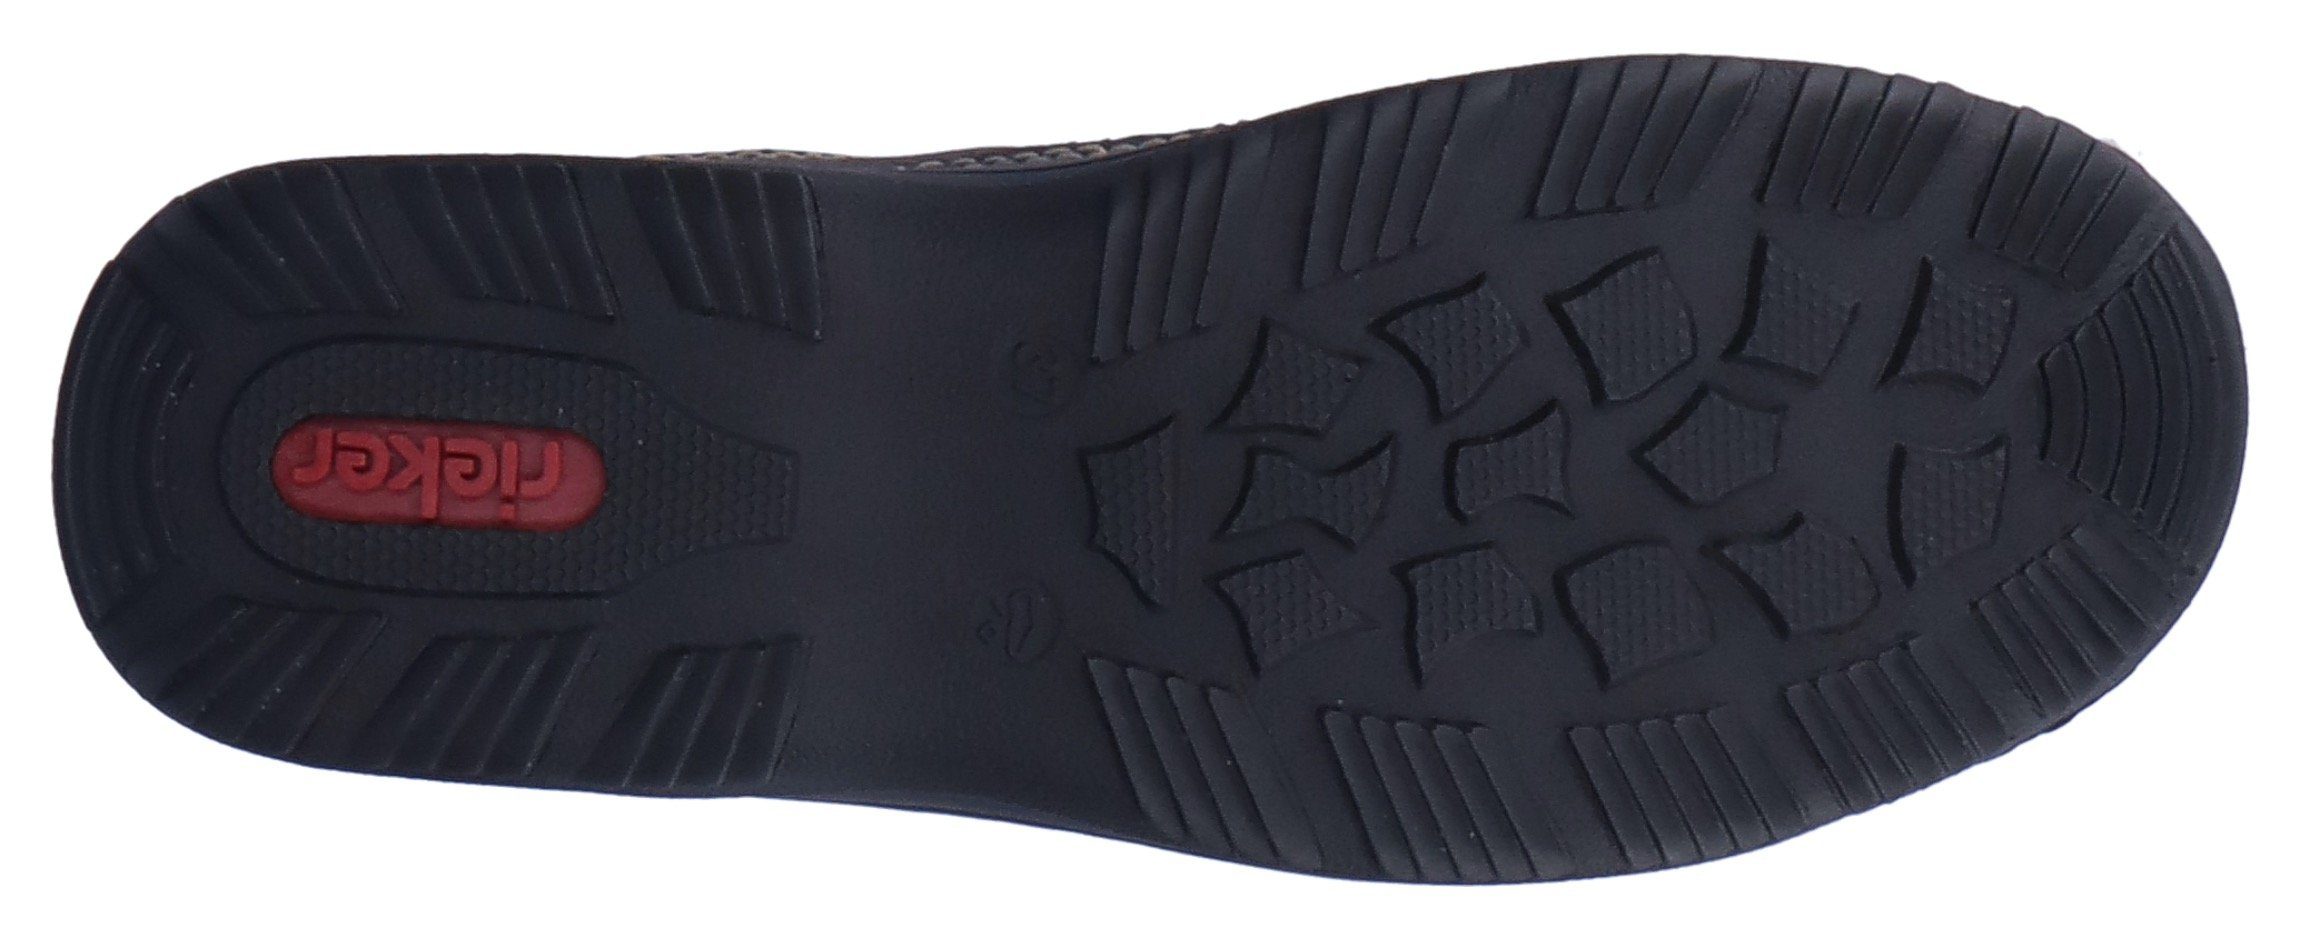 Rieker Slip-On Sneaker feiner schwarz-kombiniert Ziernaht mit